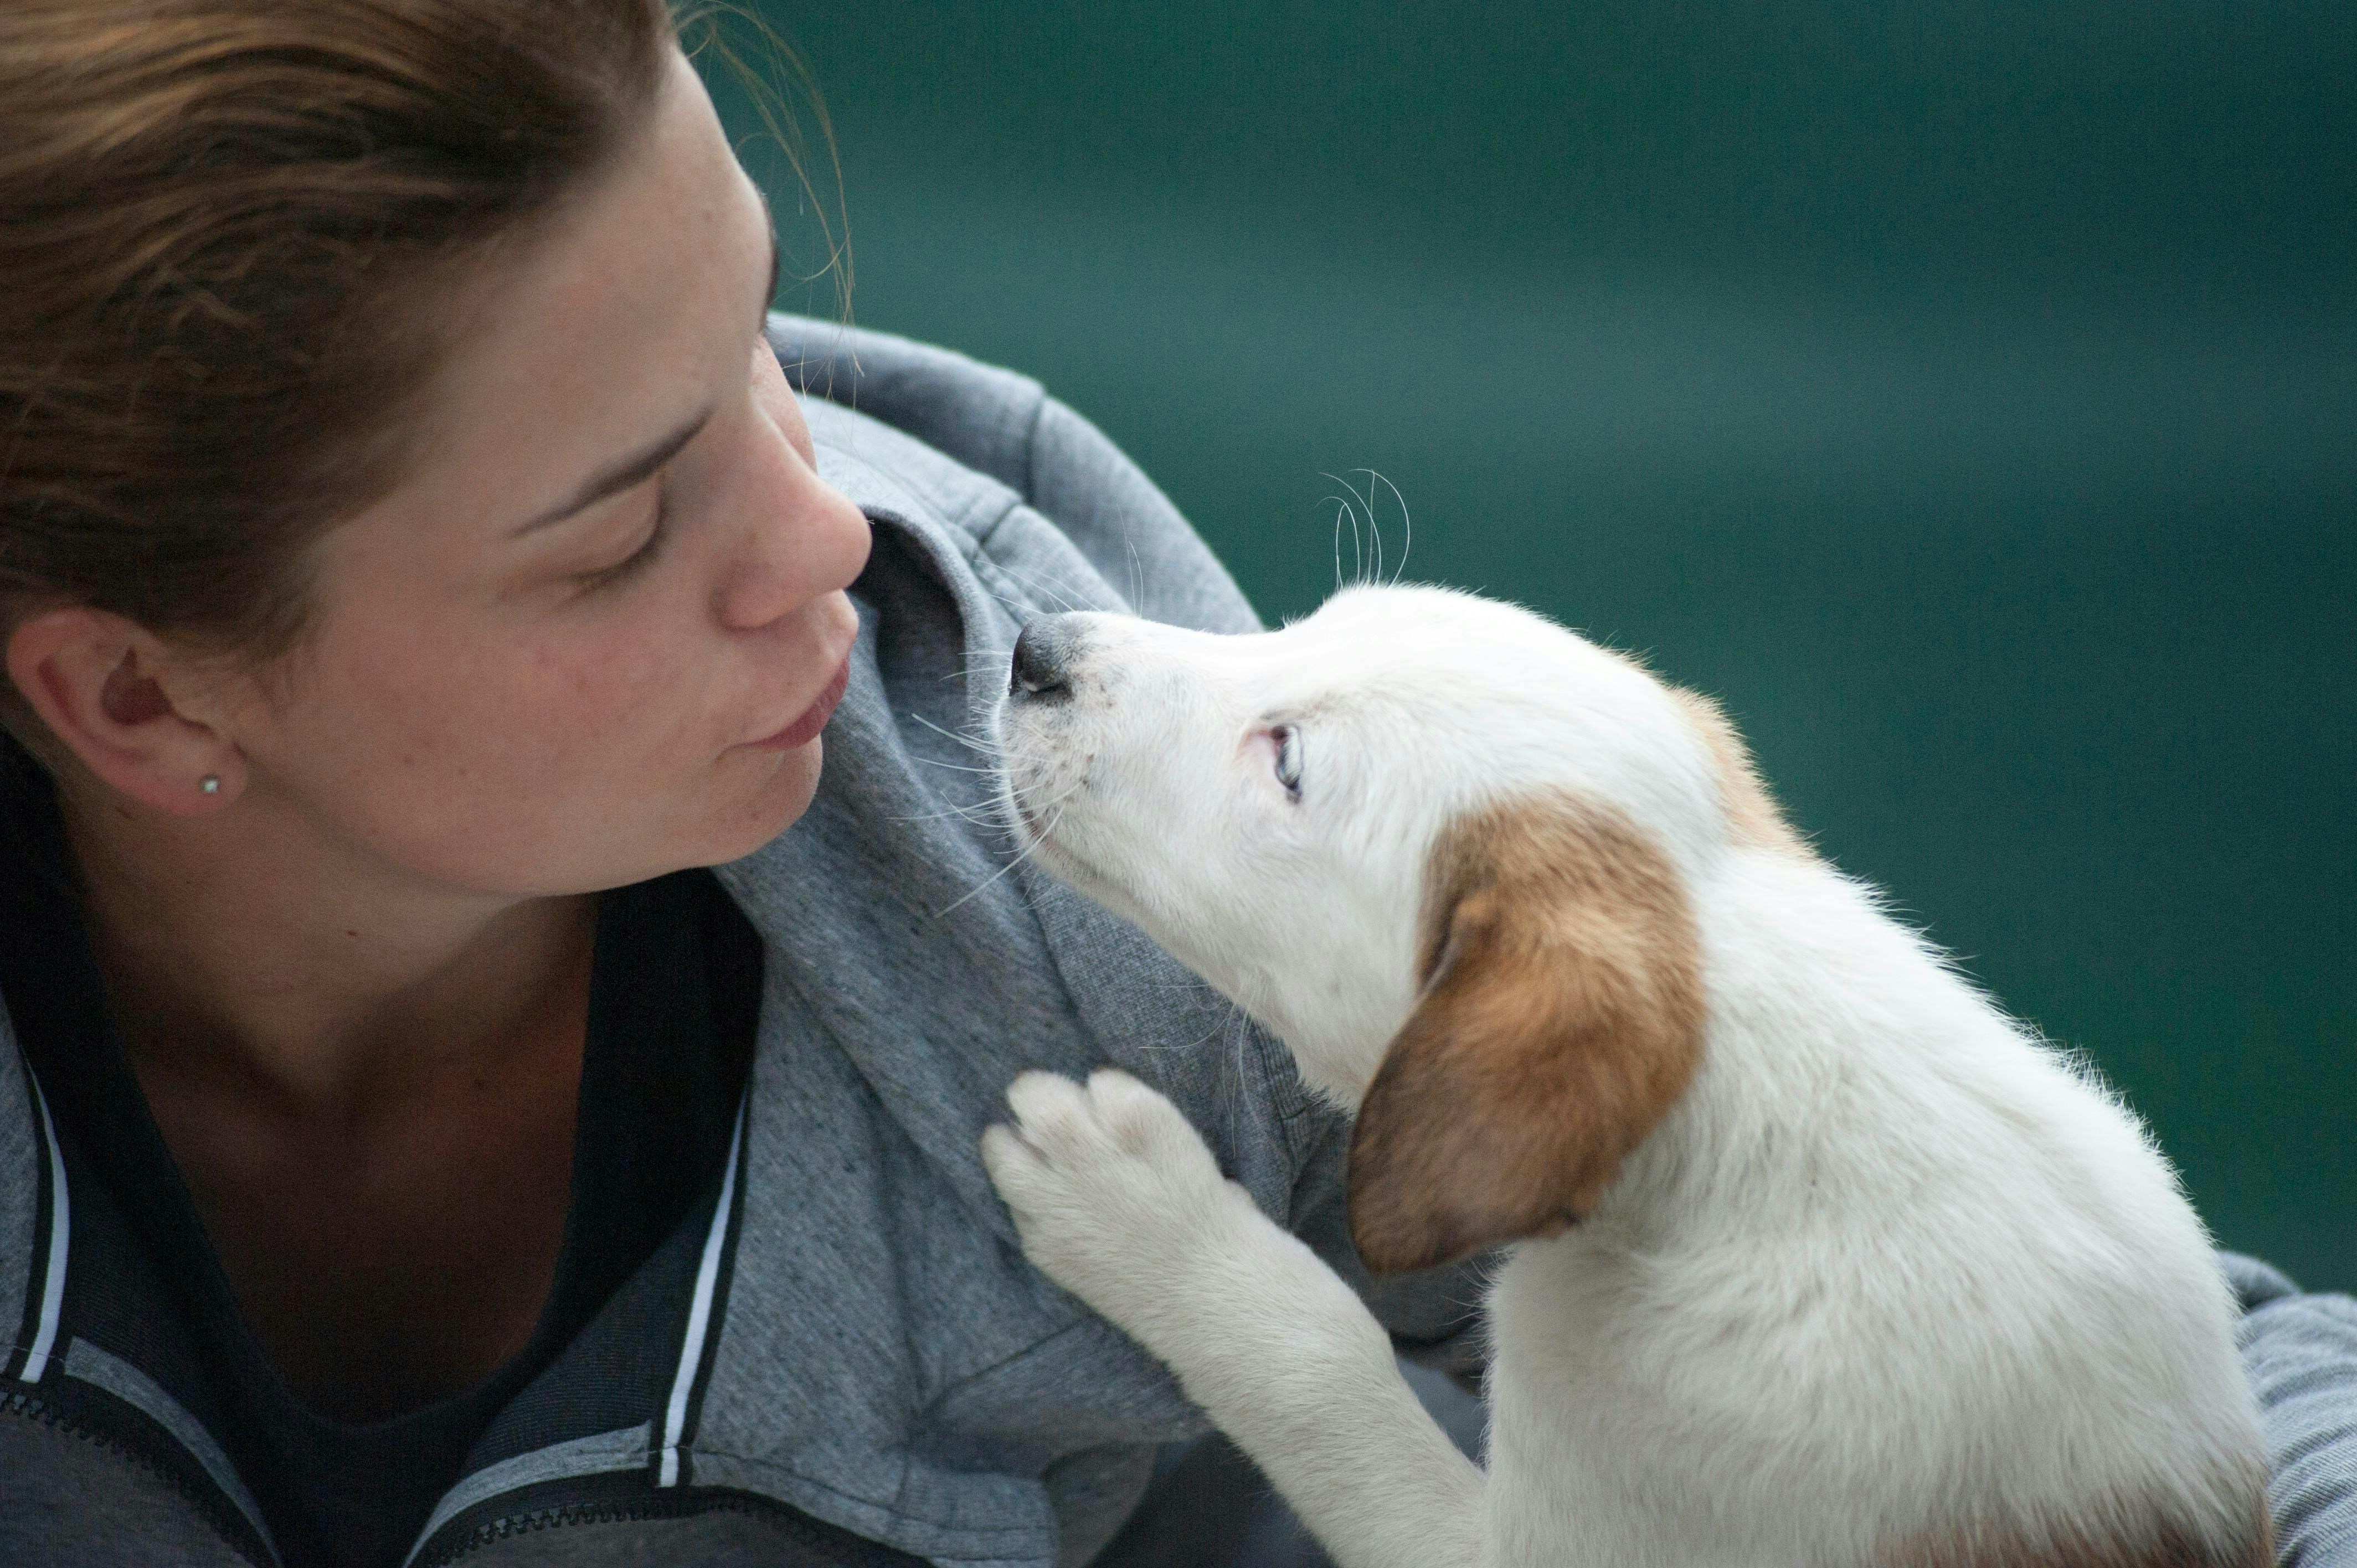 A puppy sniffs a woman's face